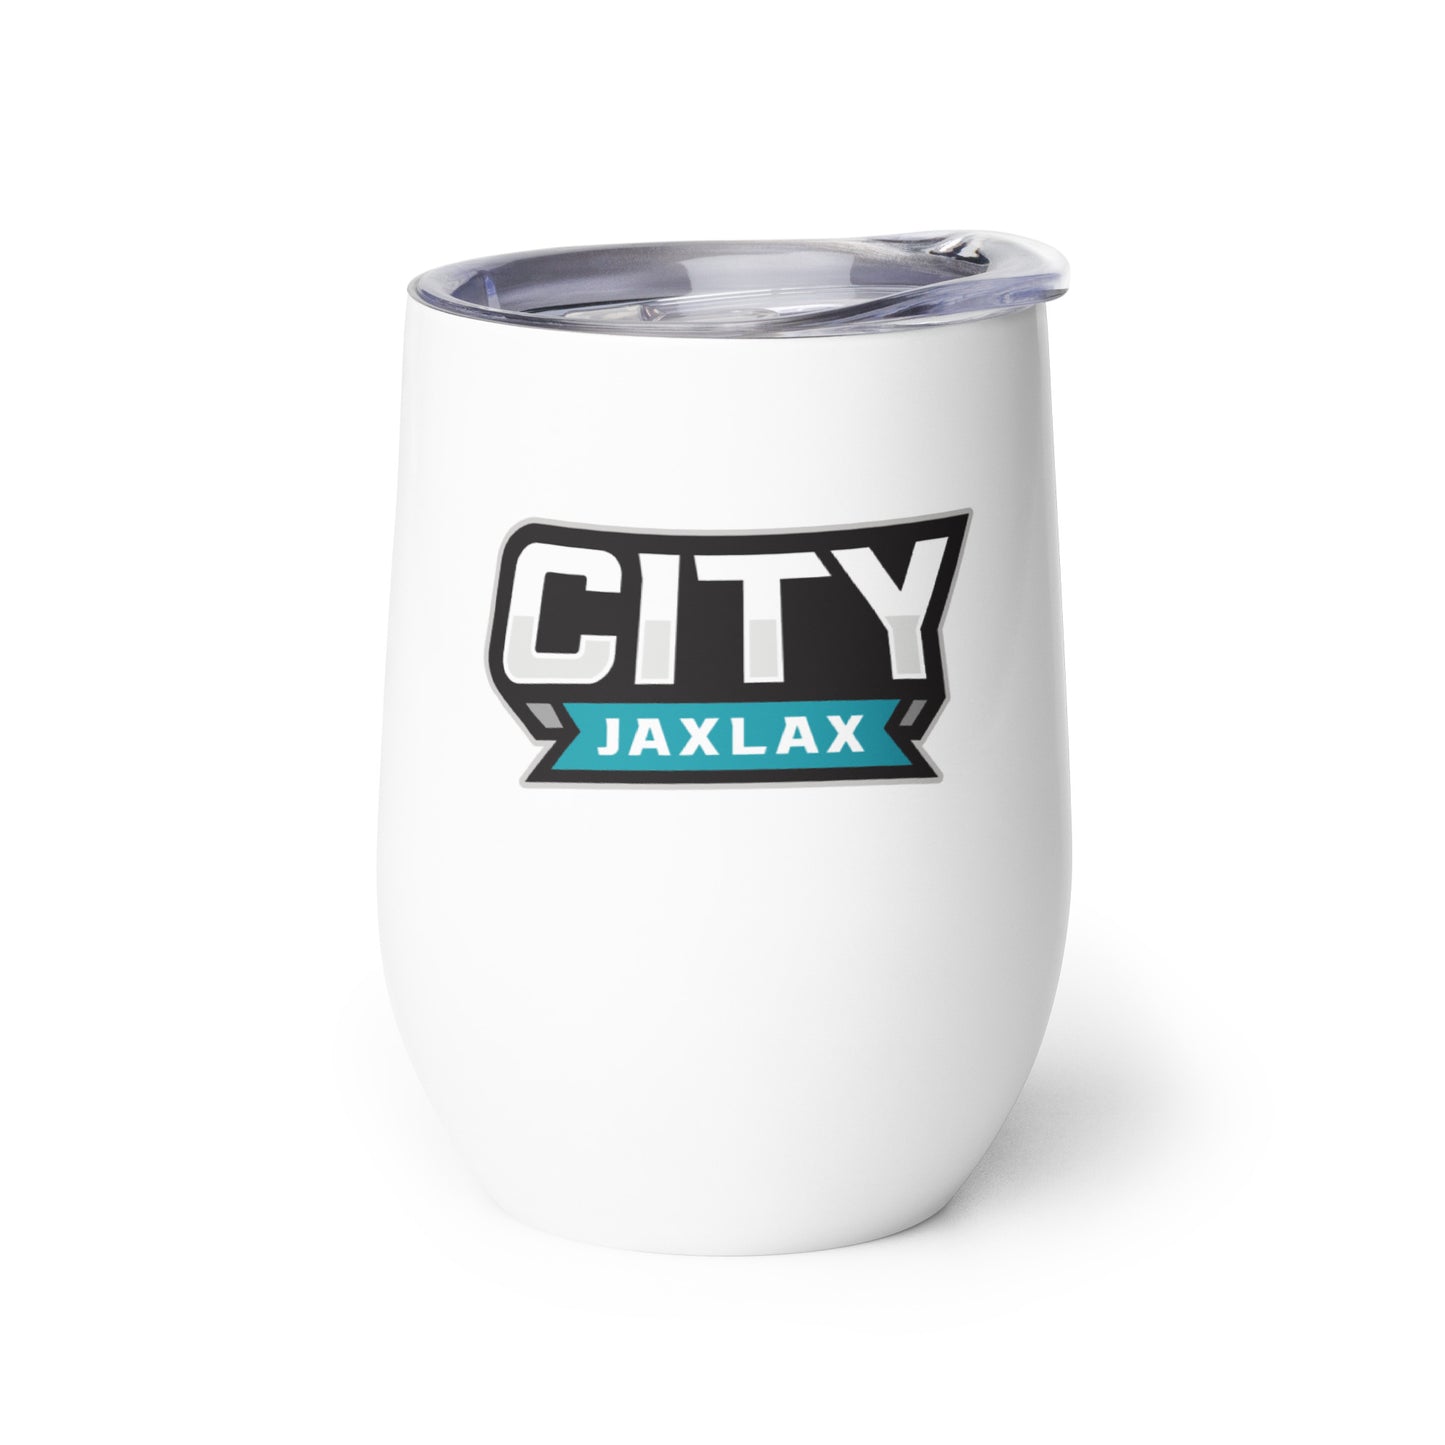 Jax Lax City - Wine tumbler